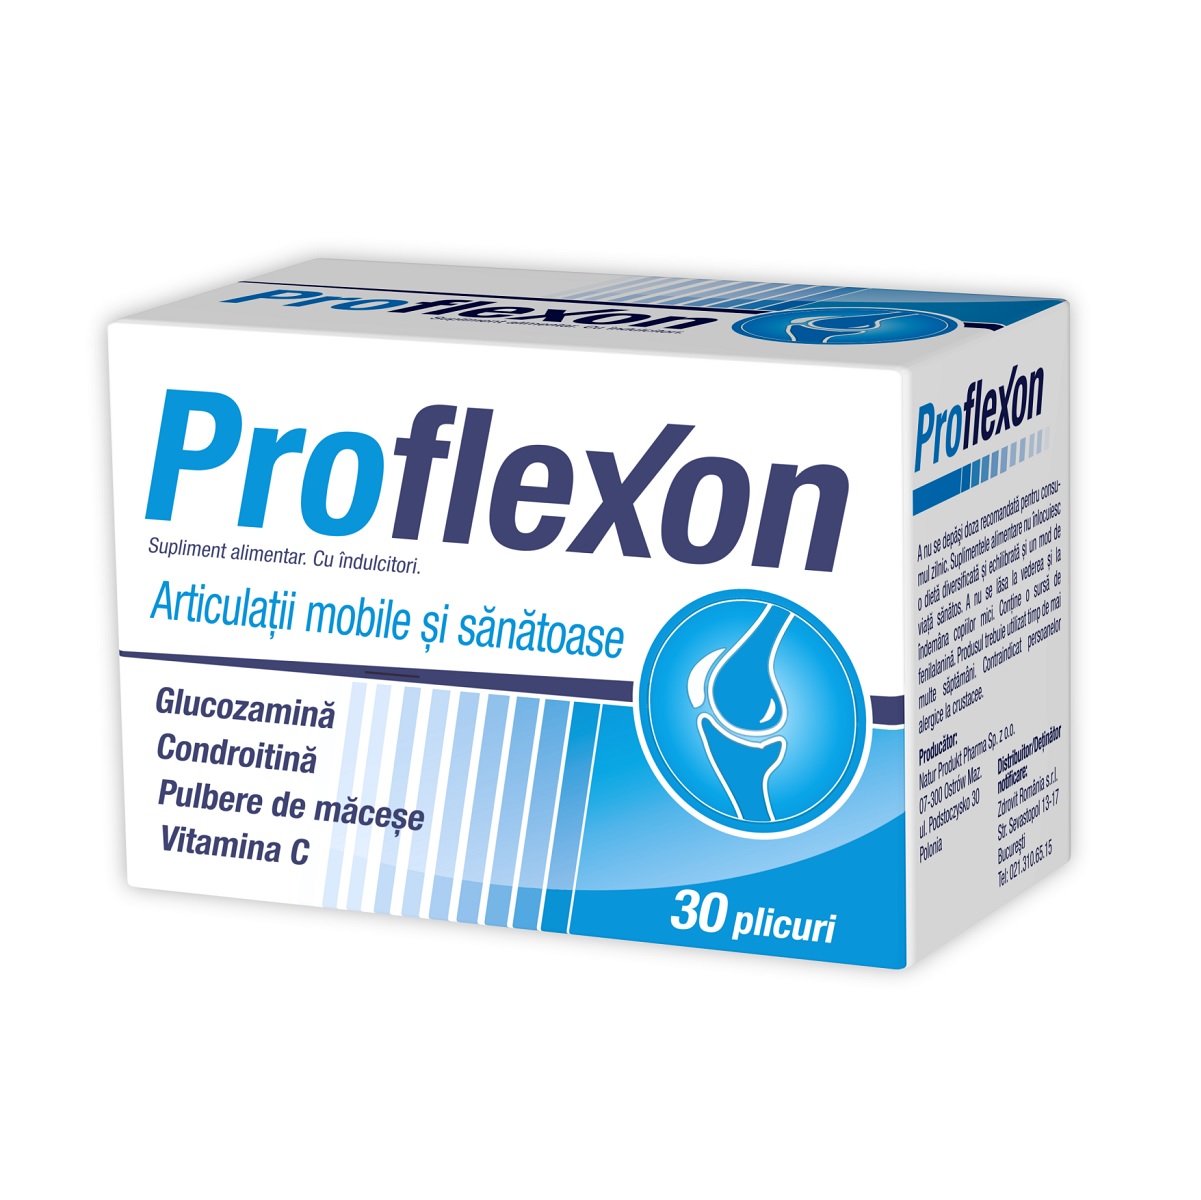 Proflexon 30pl - Natur produkt, pret 43,9 lei - Planteea